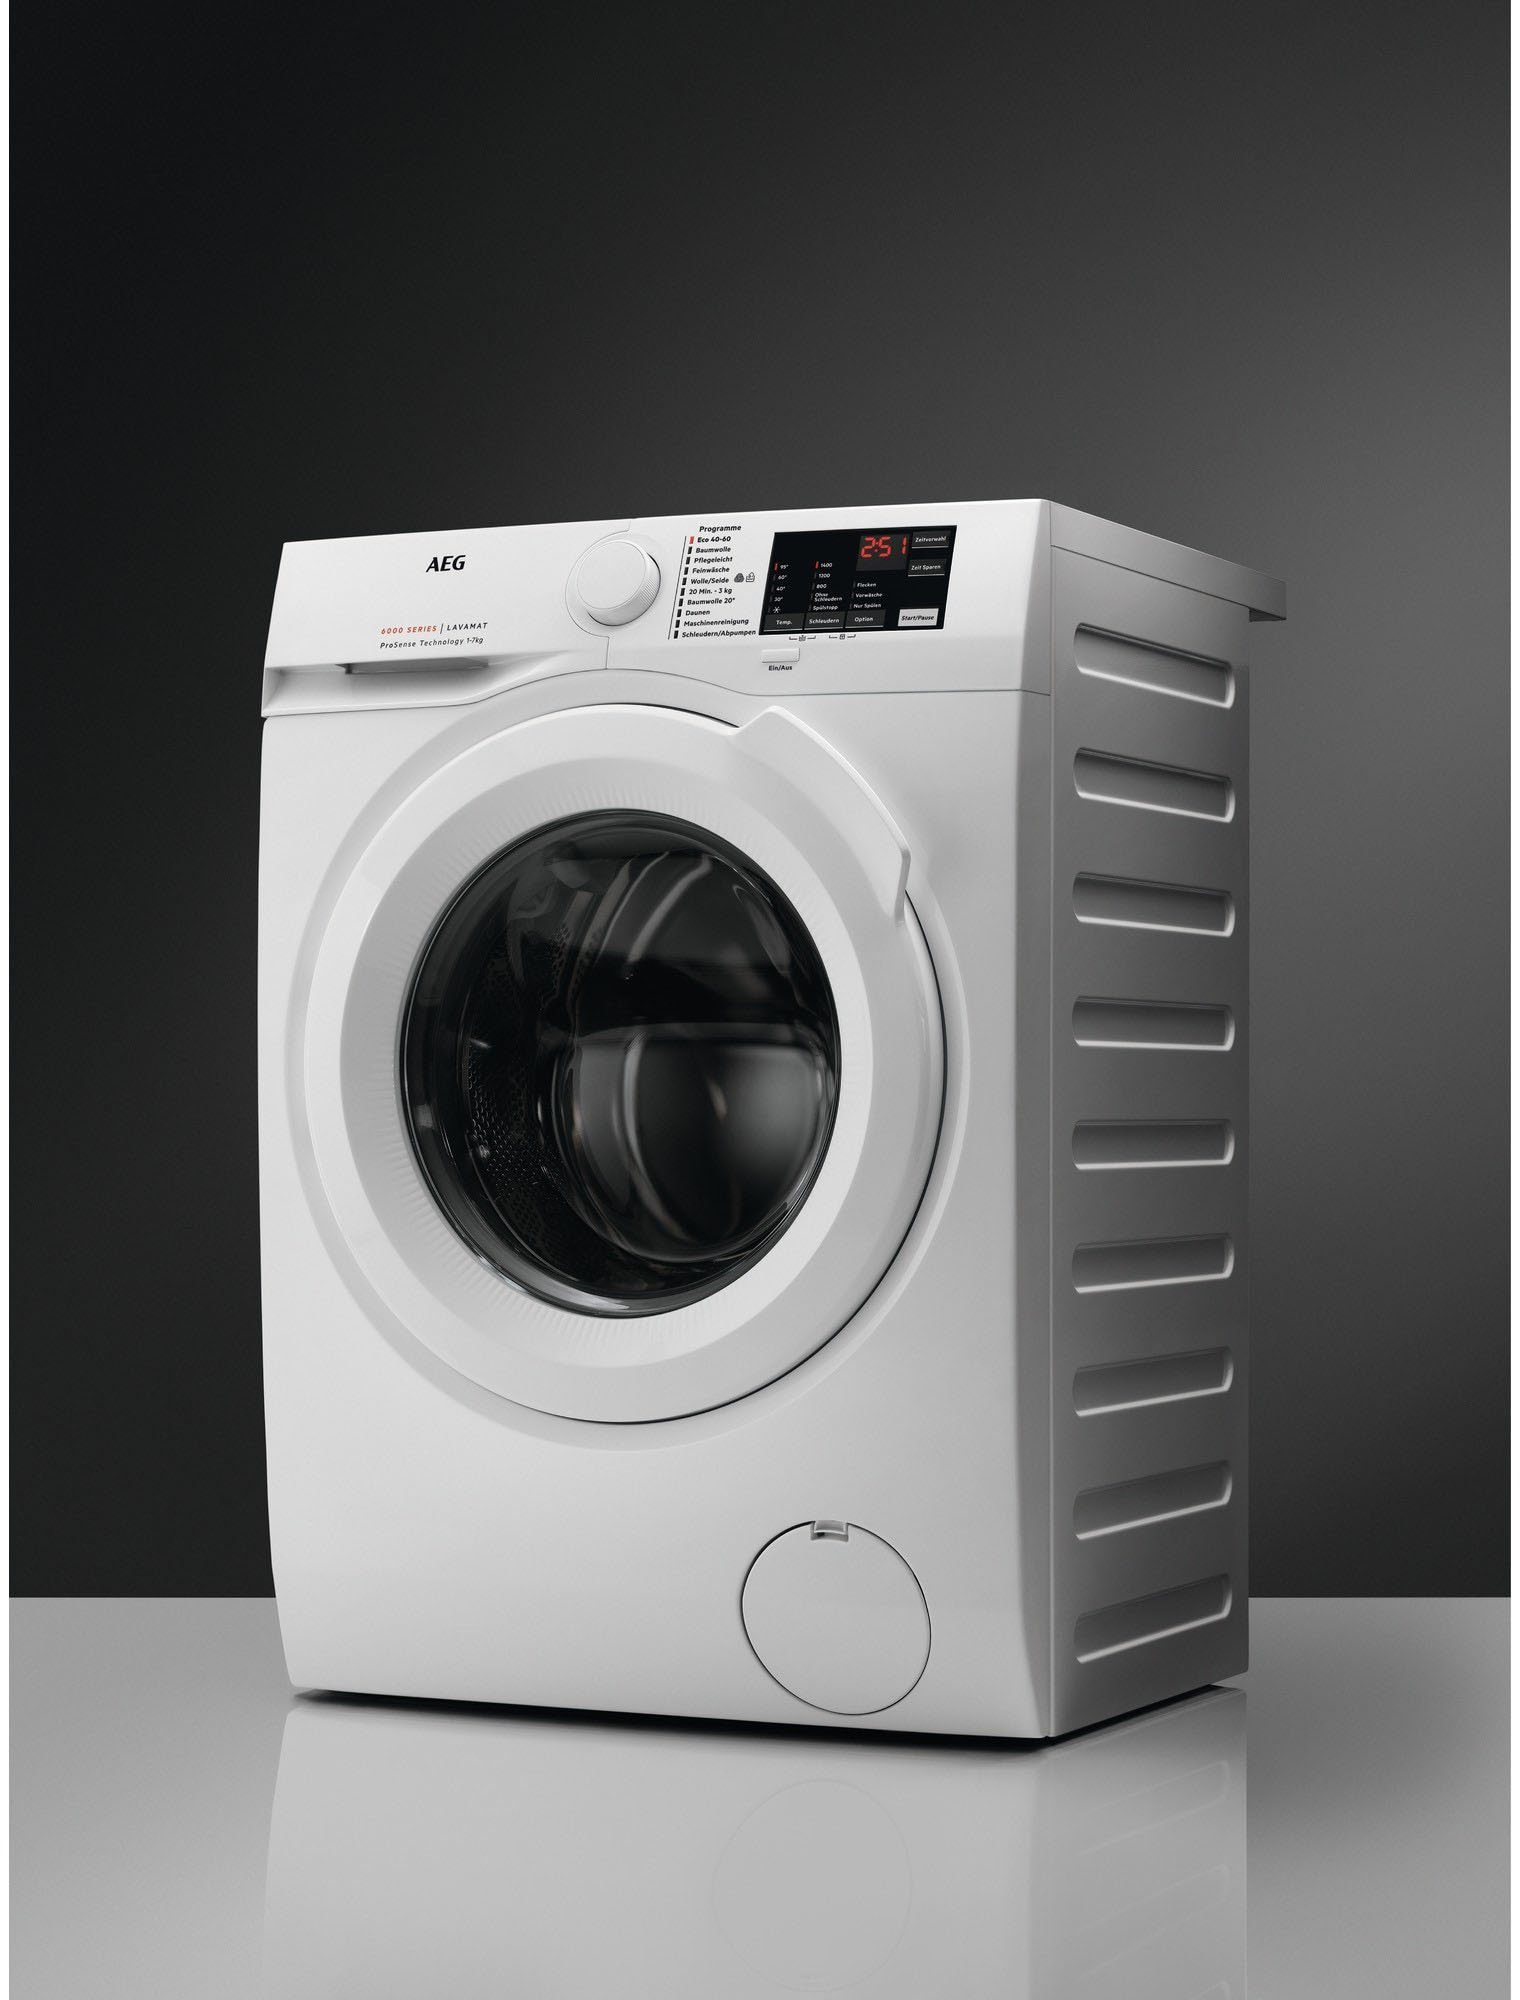 AEG Waschmaschine L6FBA51680, mit U/min, Programm 1600 Hygiene-/ kg, Anti-Allergie 8 Dampf